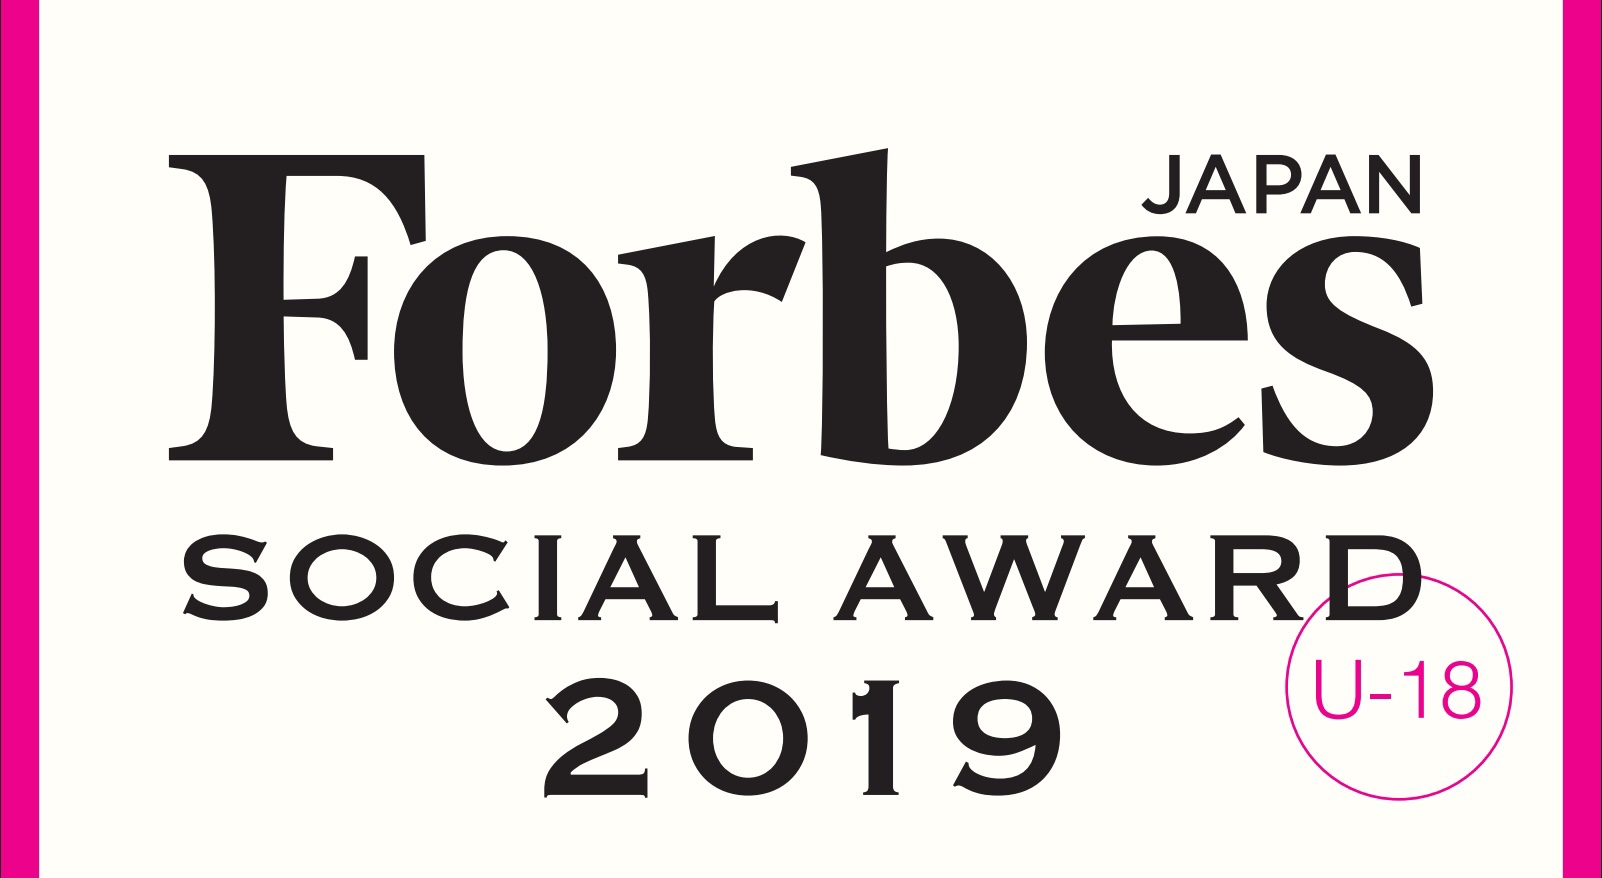 【社会問題の解決に貢献できる社会を作る】Forbes JAPAN SOCIAL AWARD 2019